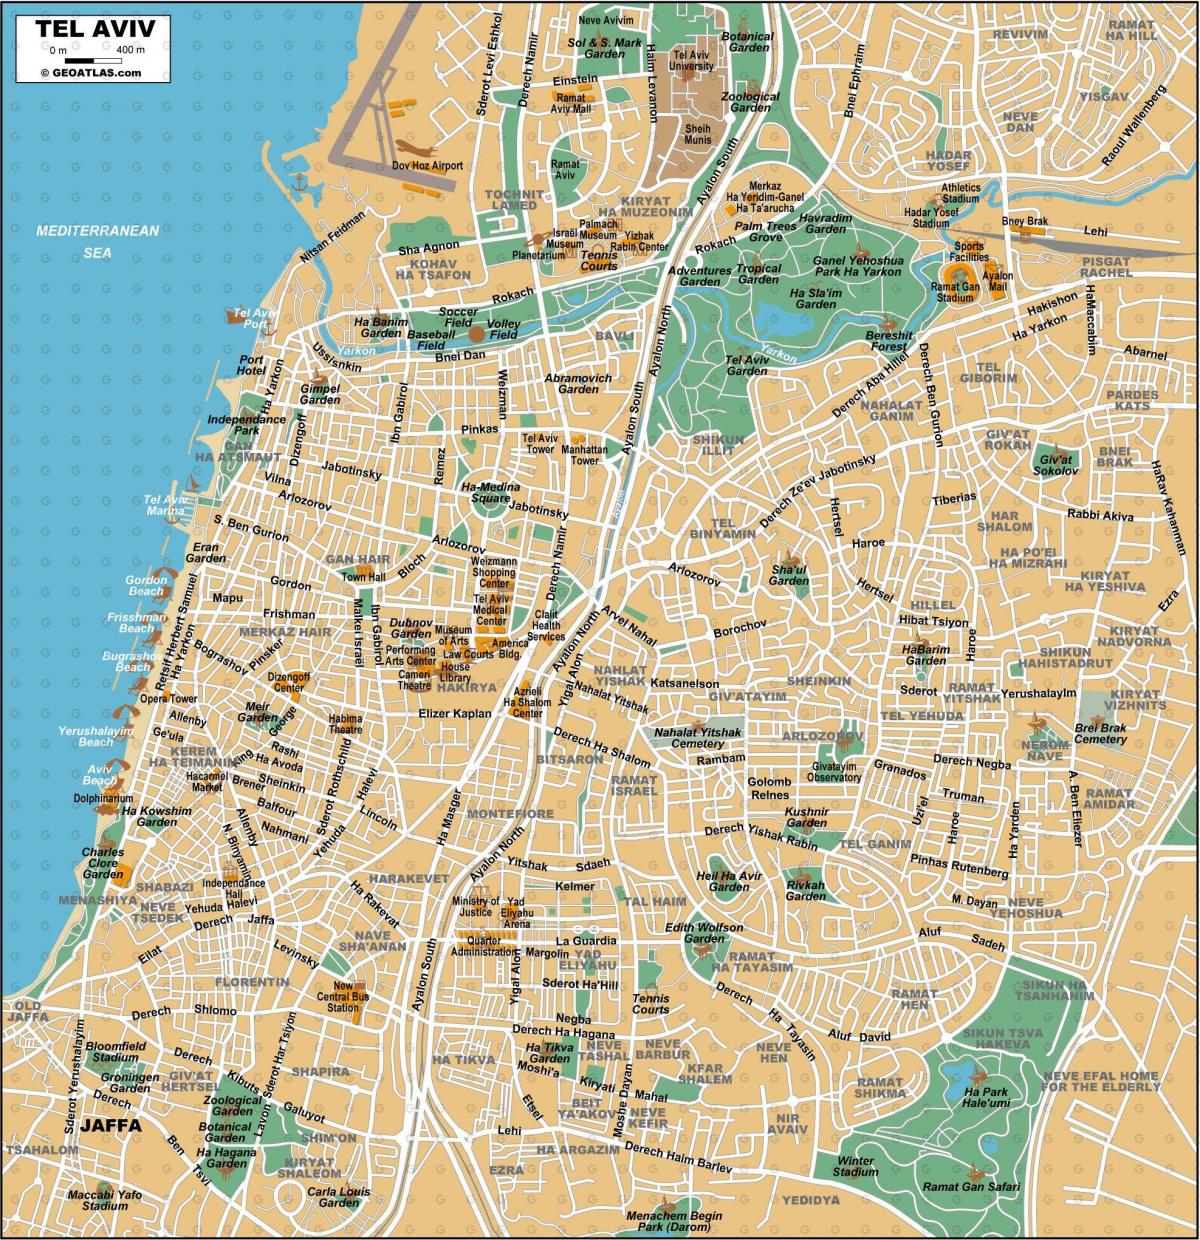 Tel Aviv city center map